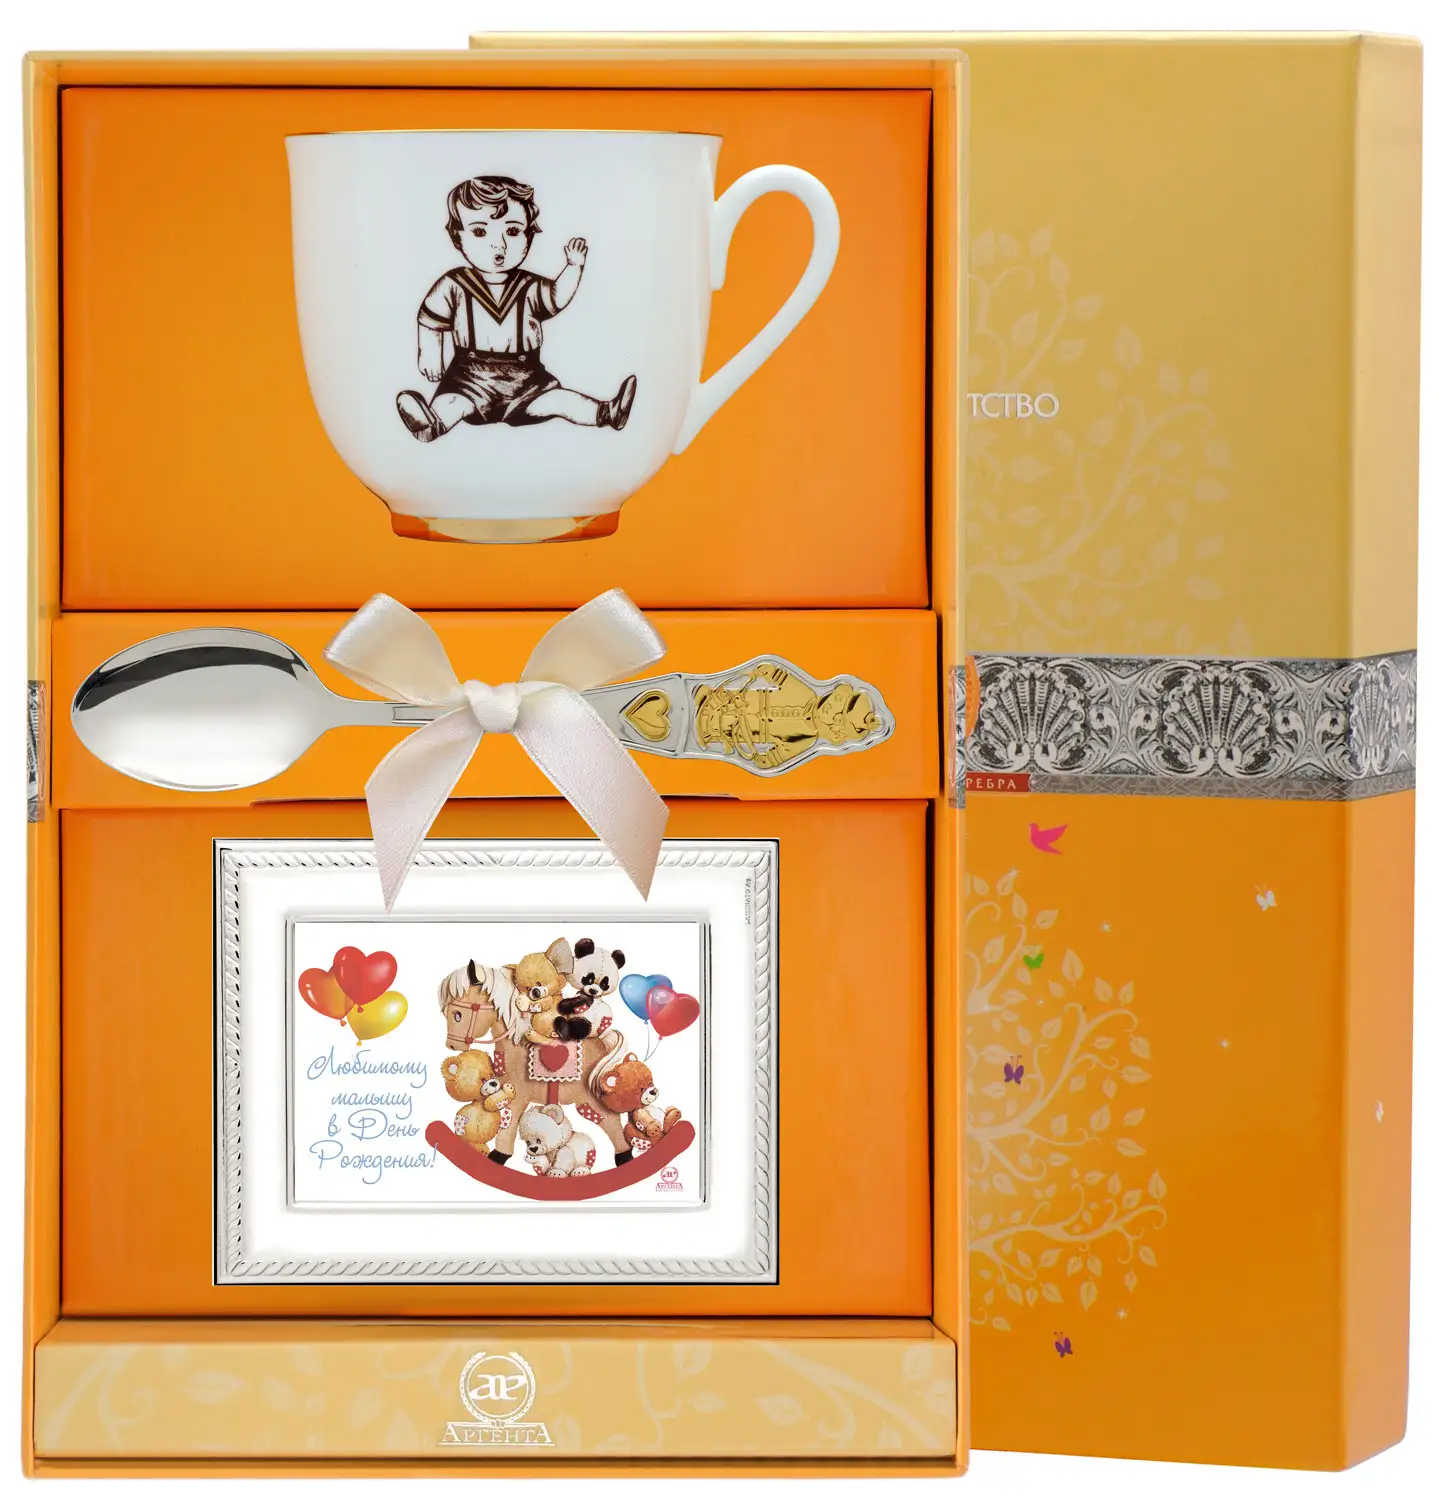 Набор детский Ландыш-Мальчик: ложка, рамка для фото, чашка (Серебро 925) набор чайный ландыш желтые цветы ложка рамка для фото чашка серебро 925